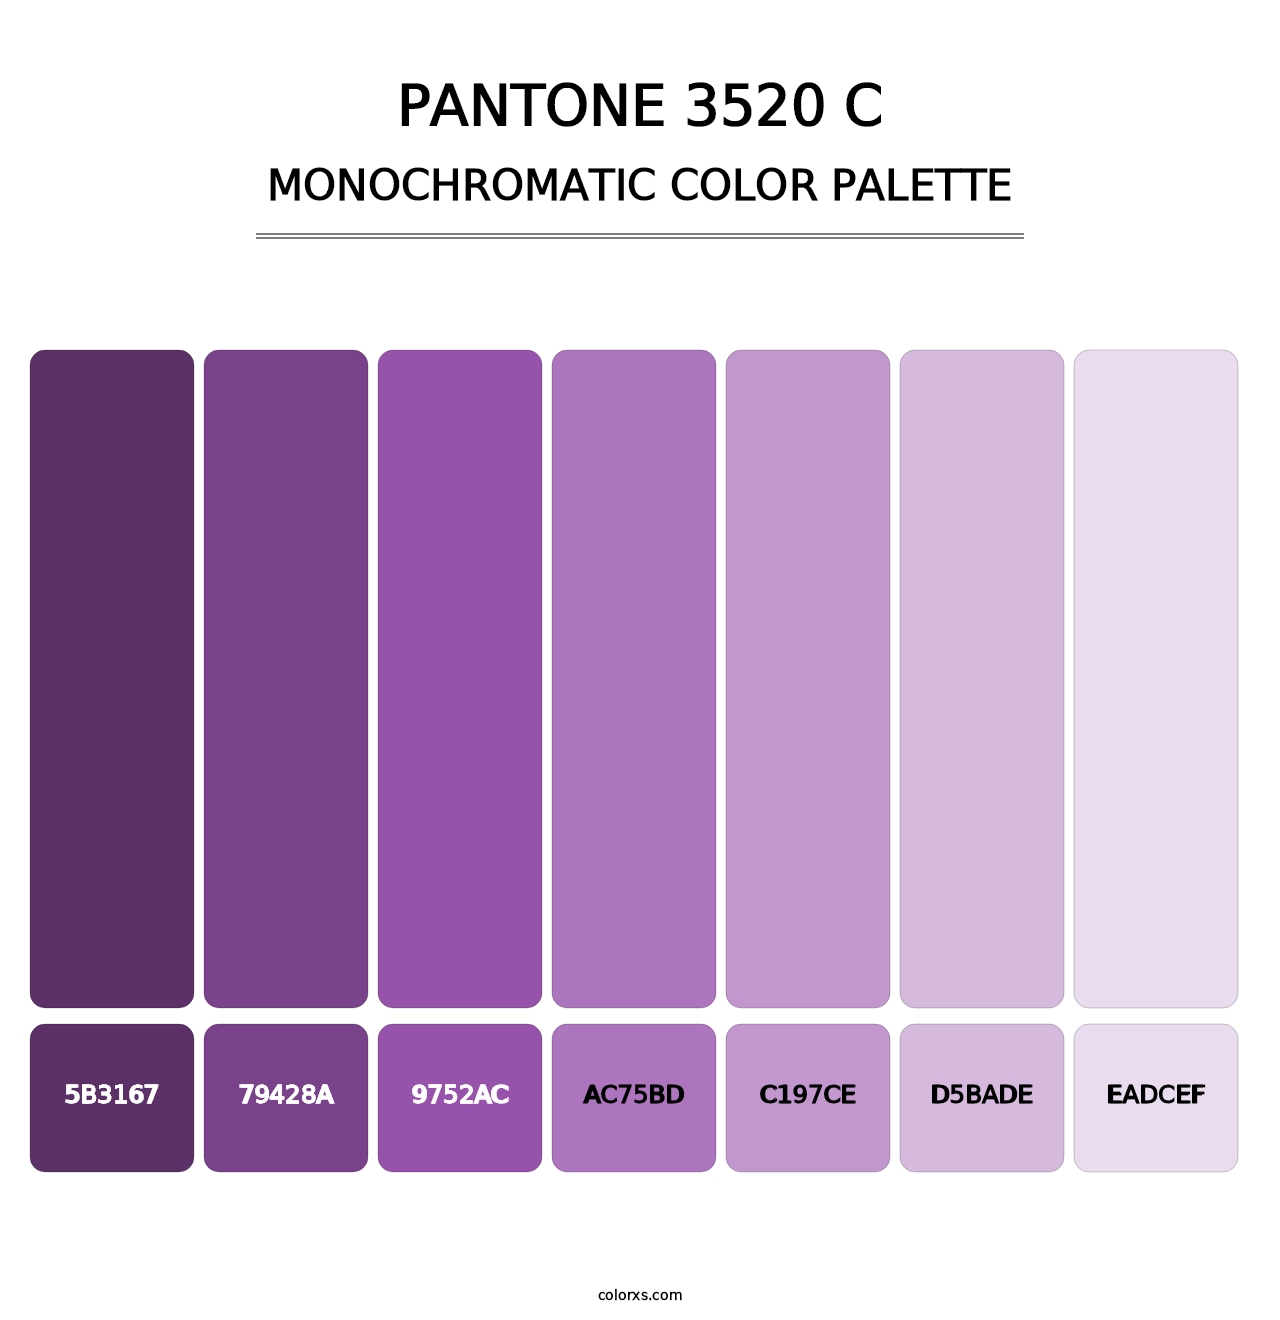 PANTONE 3520 C - Monochromatic Color Palette